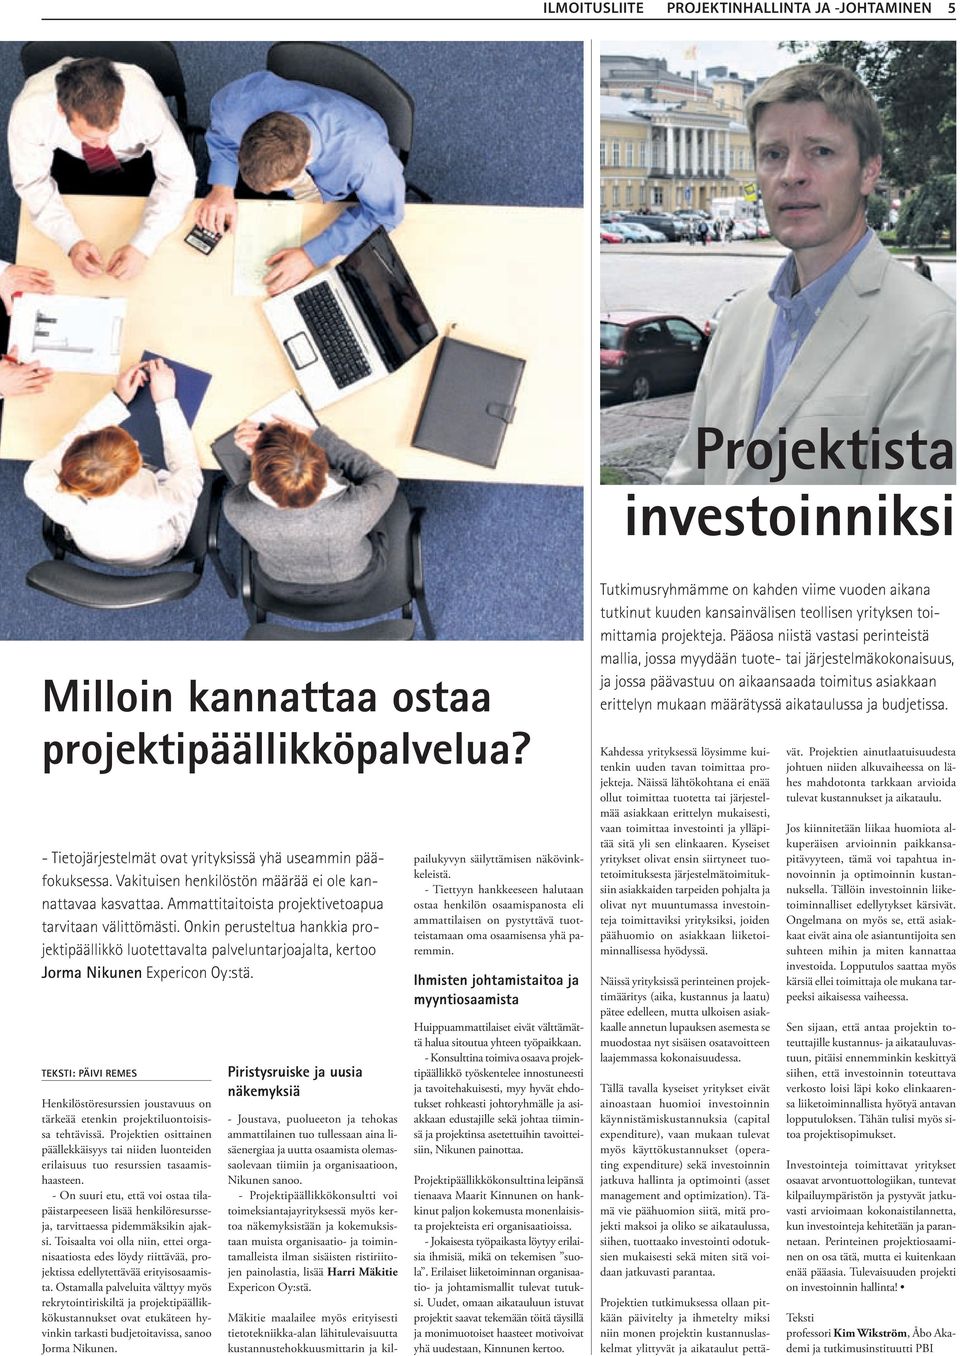 Onkin perusteltua hankkia projektipäällikkö luotettavalta palveluntarjoajalta, kertoo Jorma Nikunen Expericon Oy:stä.